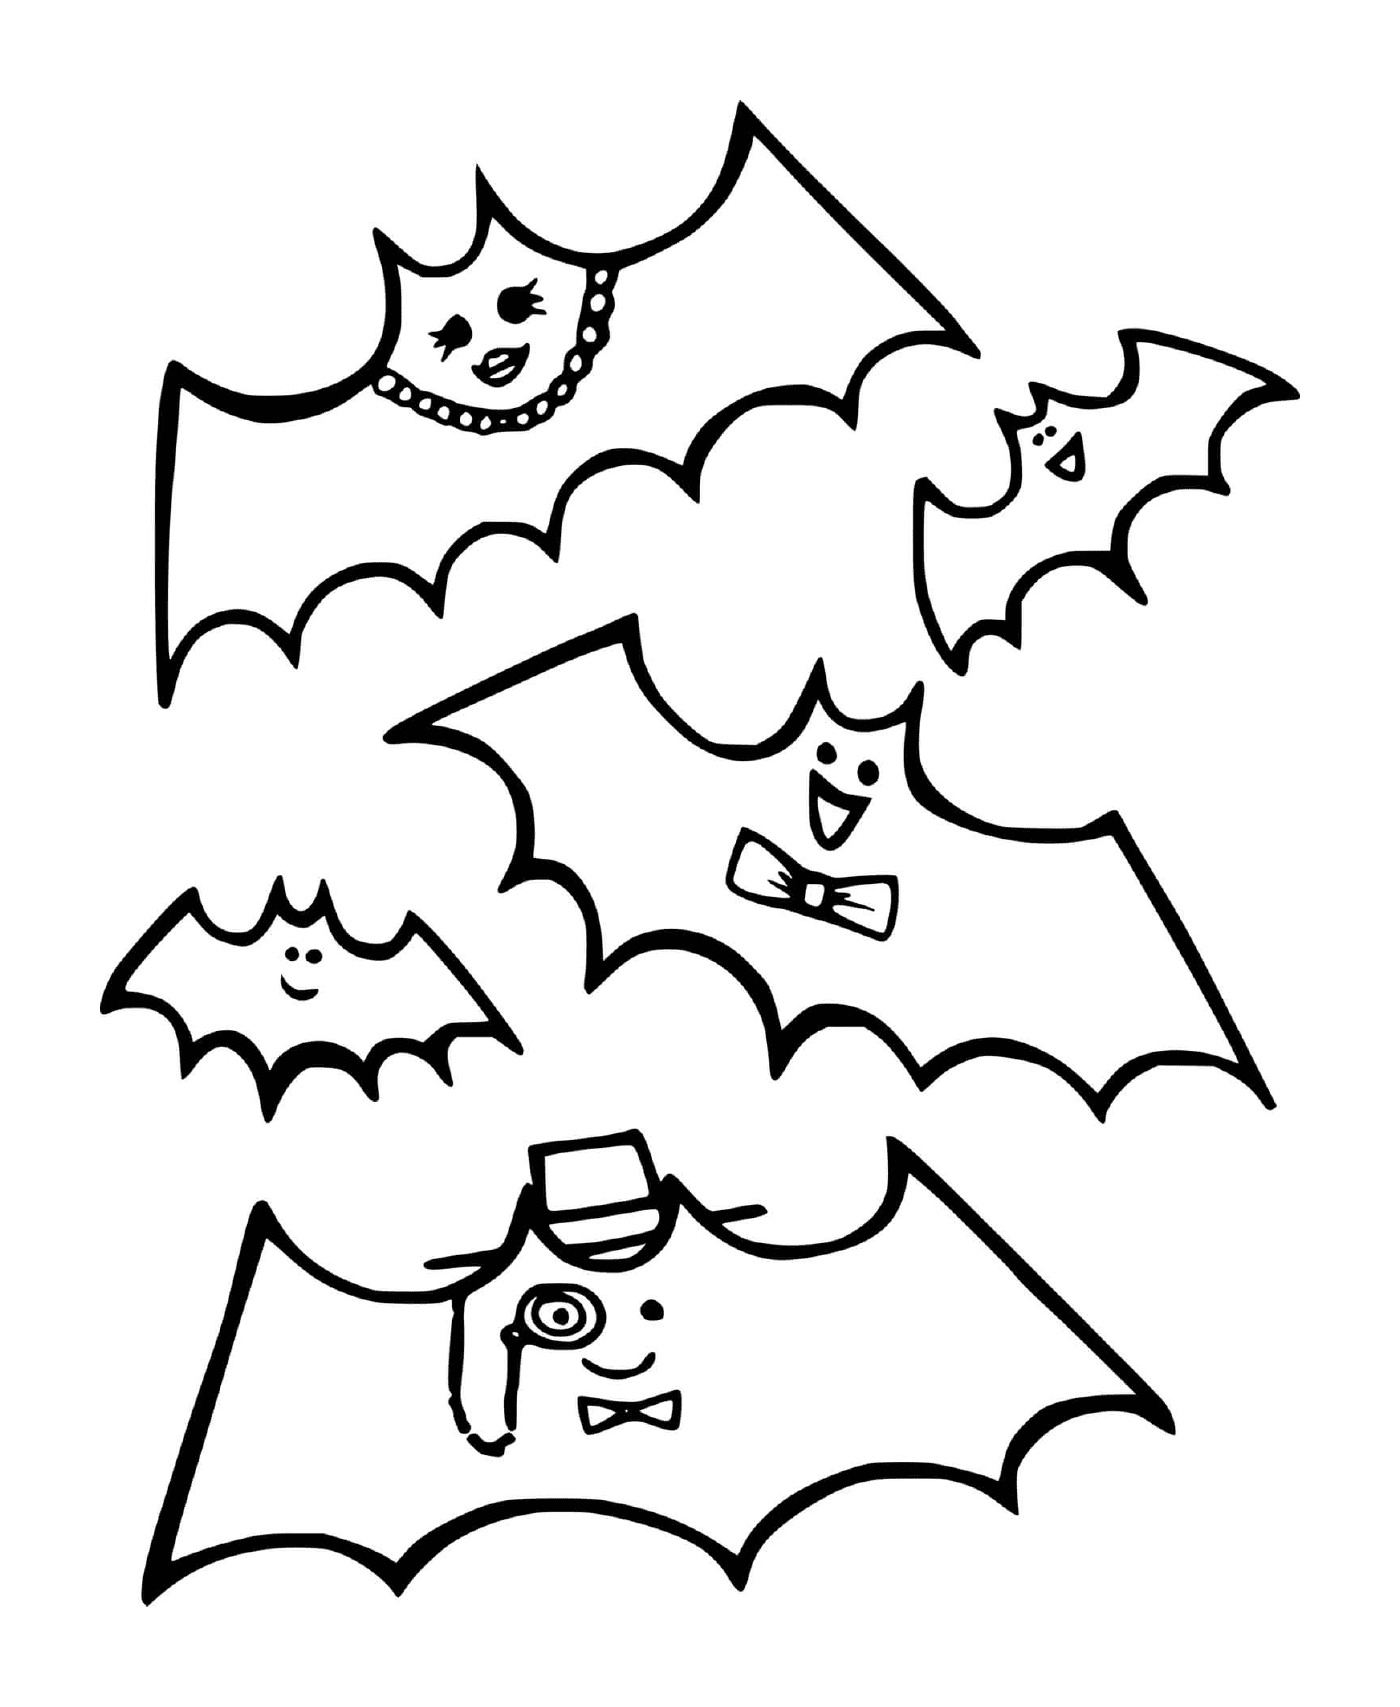  varios murciélagos con diferentes decoraciones 